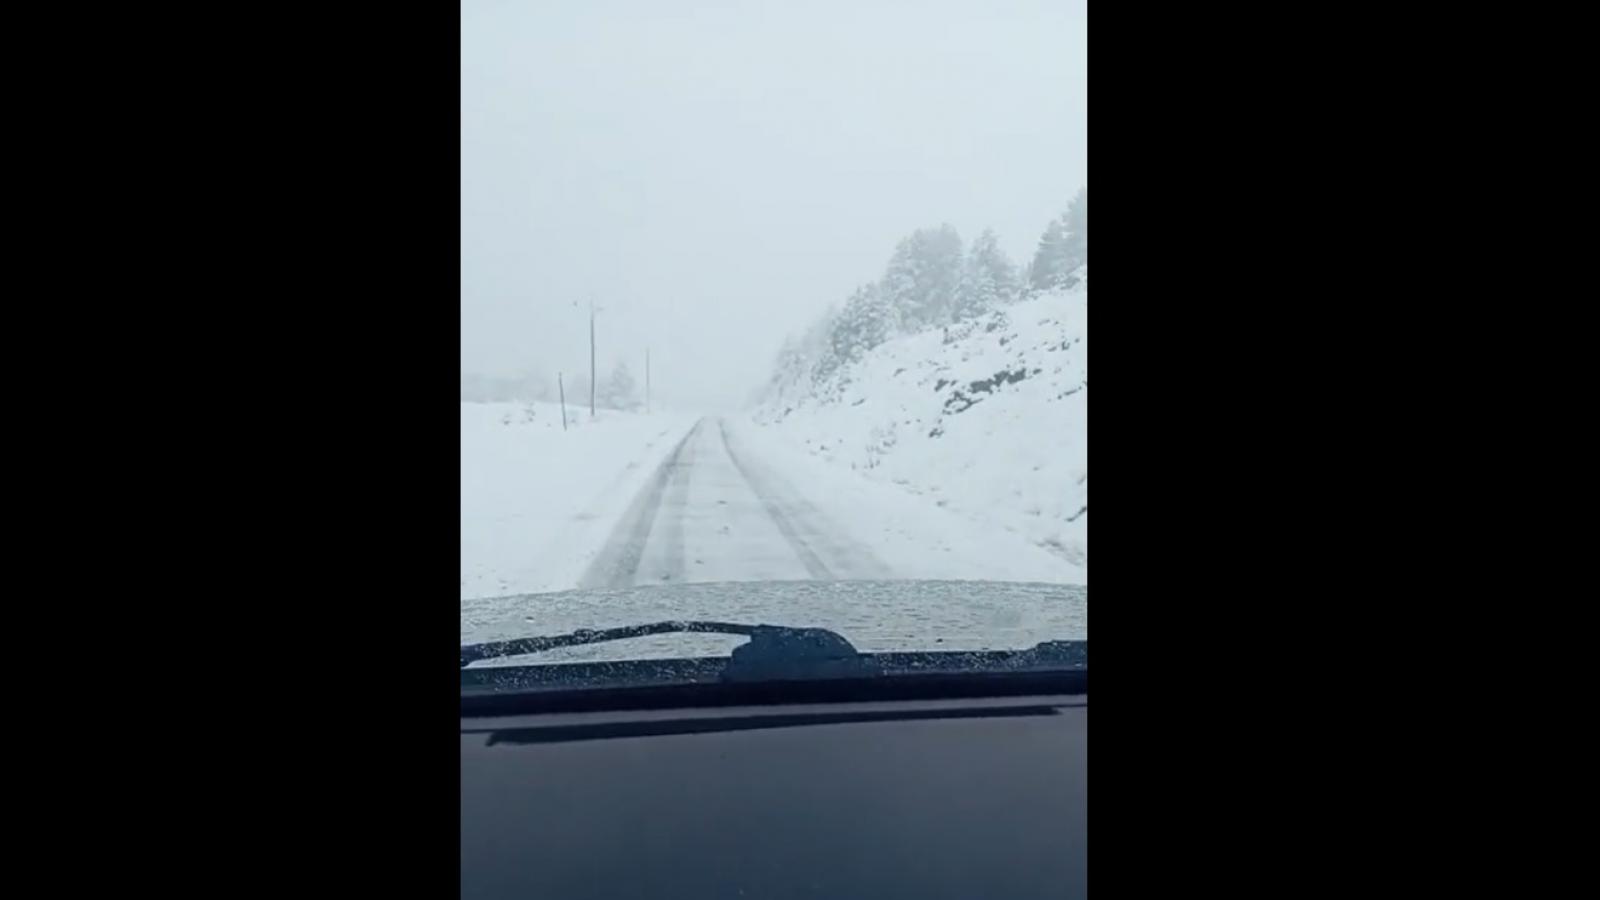 Καιρός: Πυκνό χιόνι στη διαδρομή για τη Σαμαρίνα, το ορεινότερο χωριό Ελλάδας και Βαλκανίων